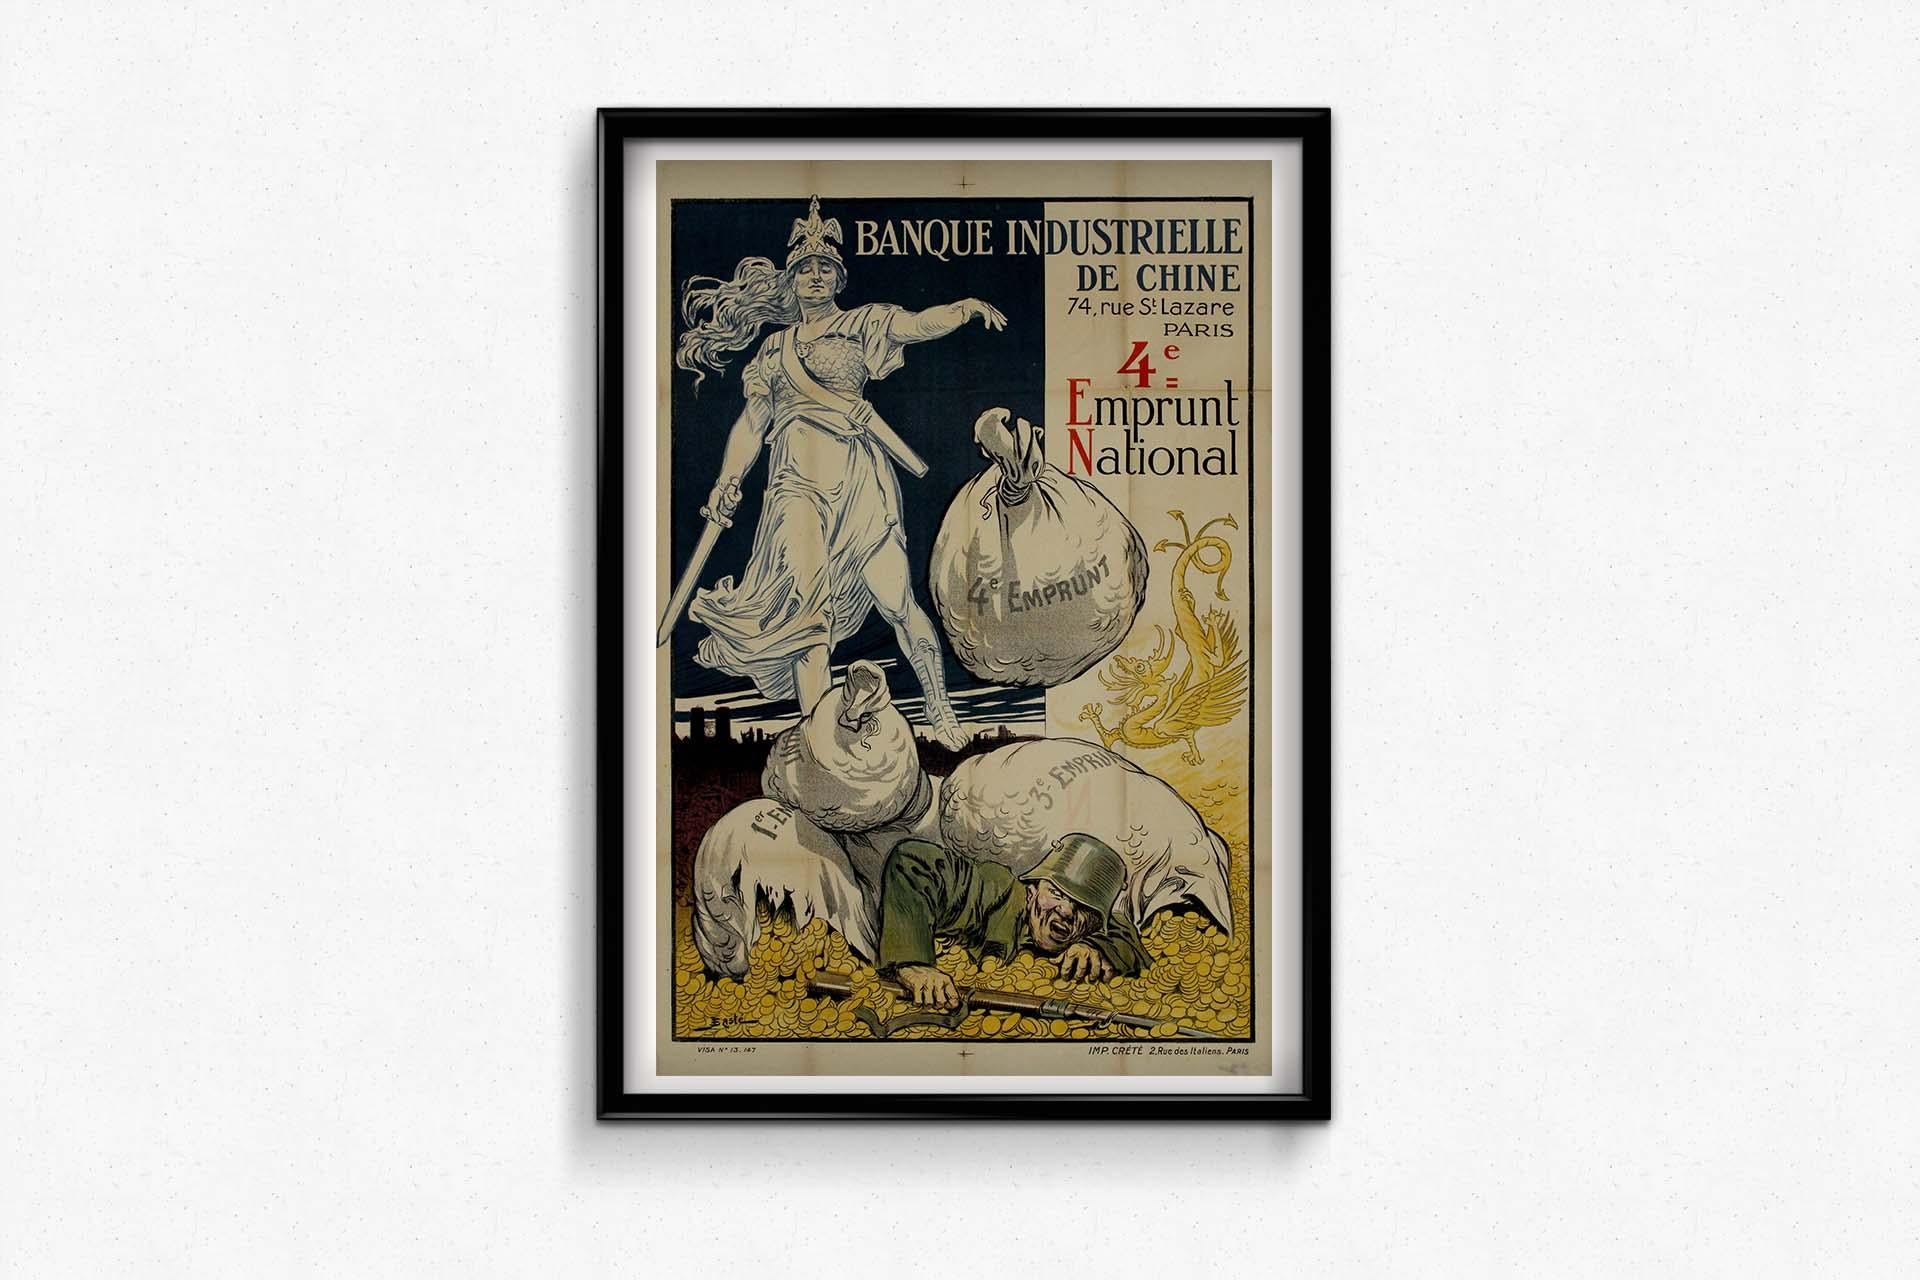 Das Originalplakat von J. Basté aus dem Jahr 1918, das für die 4. nationale Anleihe der Banque Industrielle de Chine wirbt, ist ein Zeugnis der finanziellen Mobilisierung während des Ersten Weltkriegs.
Inmitten des Konflikts starteten Regierungen